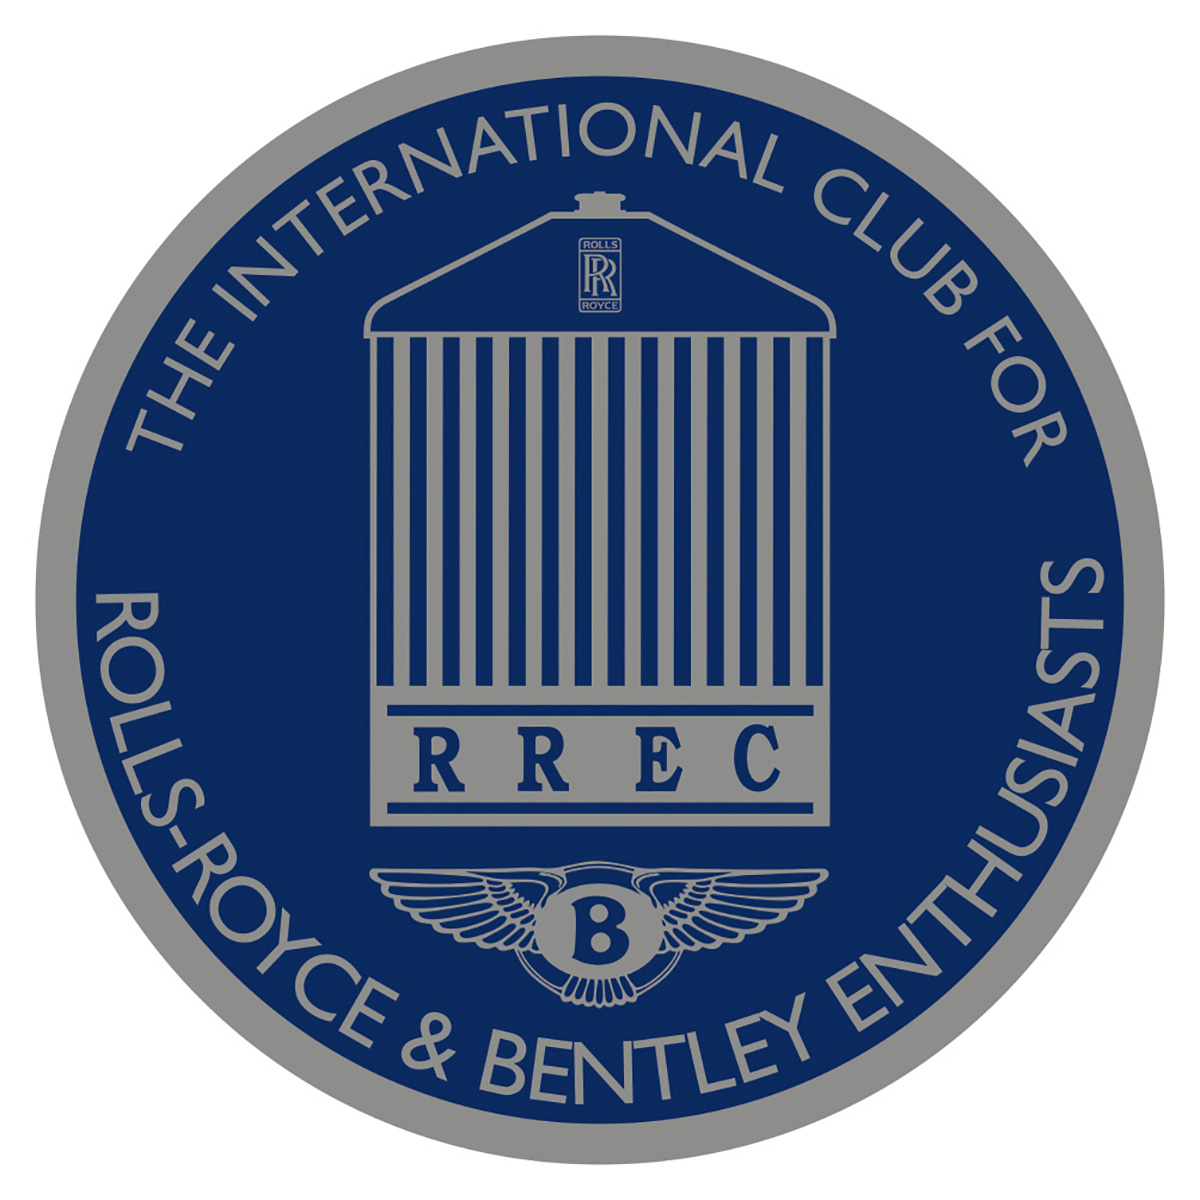 Rolls Royce & Bentley Enthusiasts International